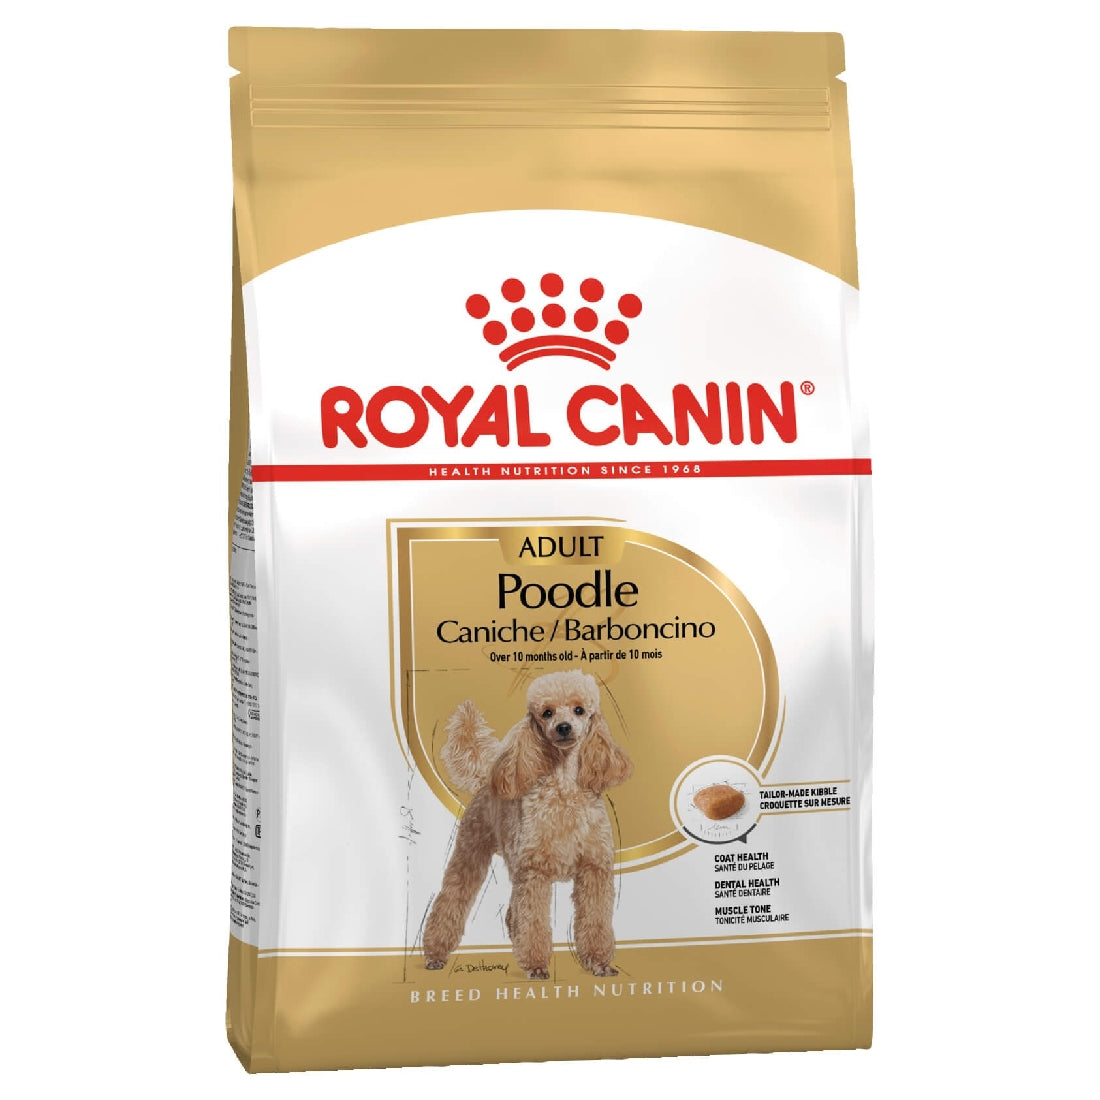 Royal Canin Poodle 1.5kg